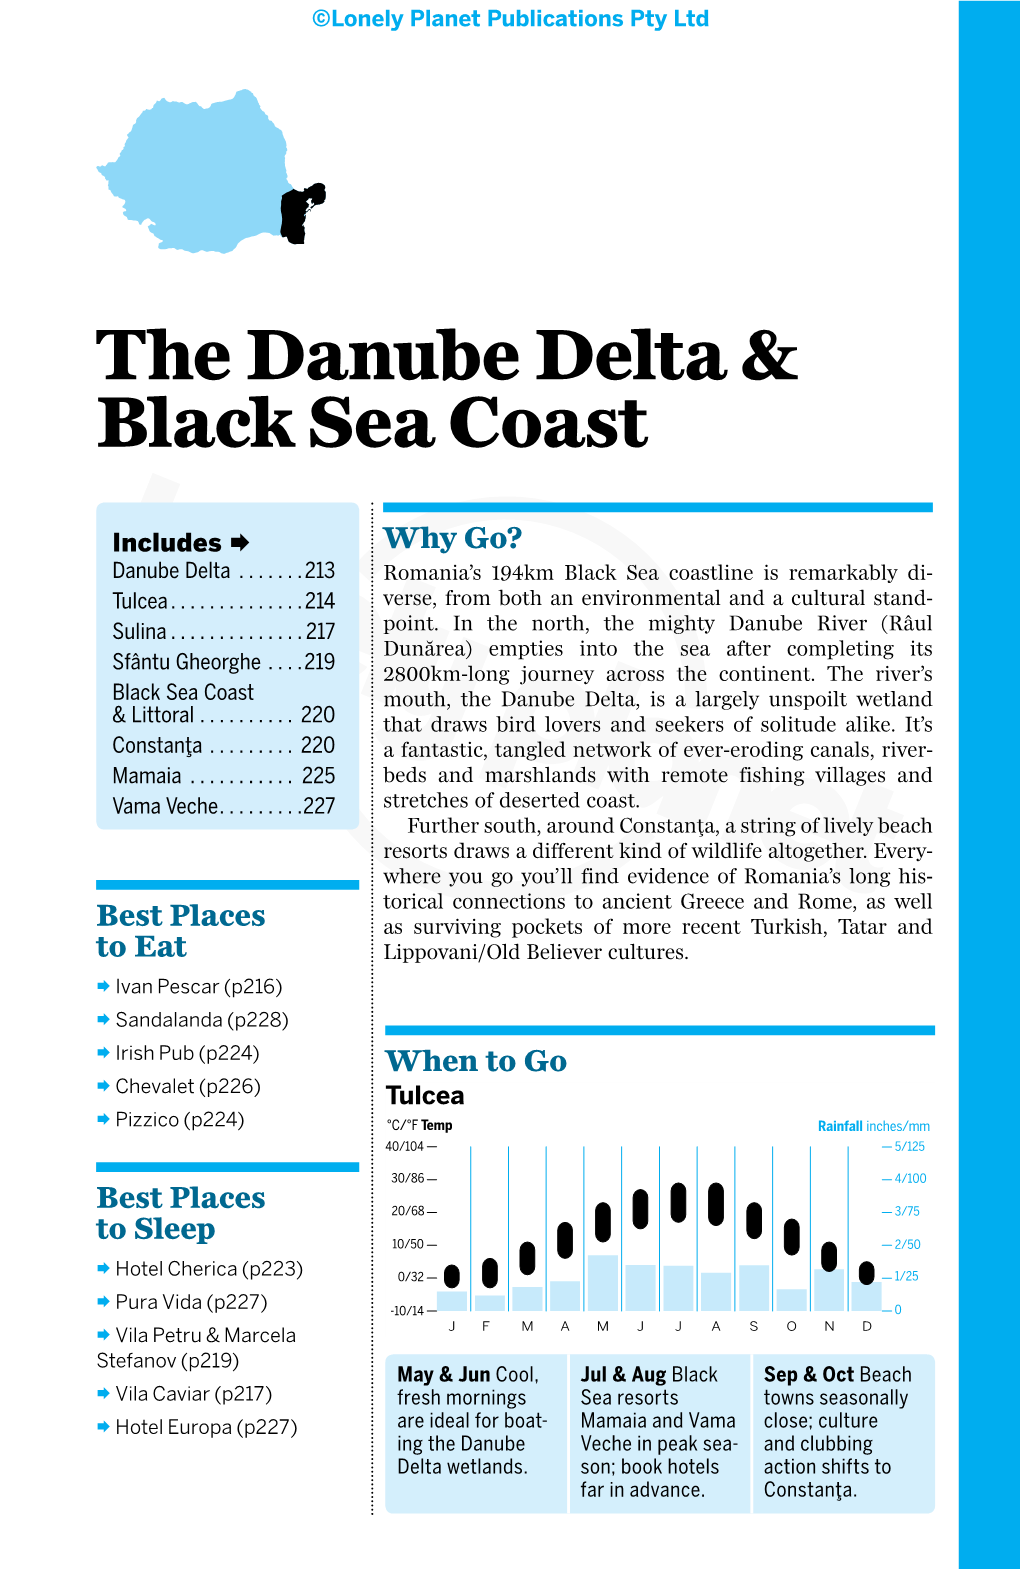 The Danube Delta & Black Sea Coast